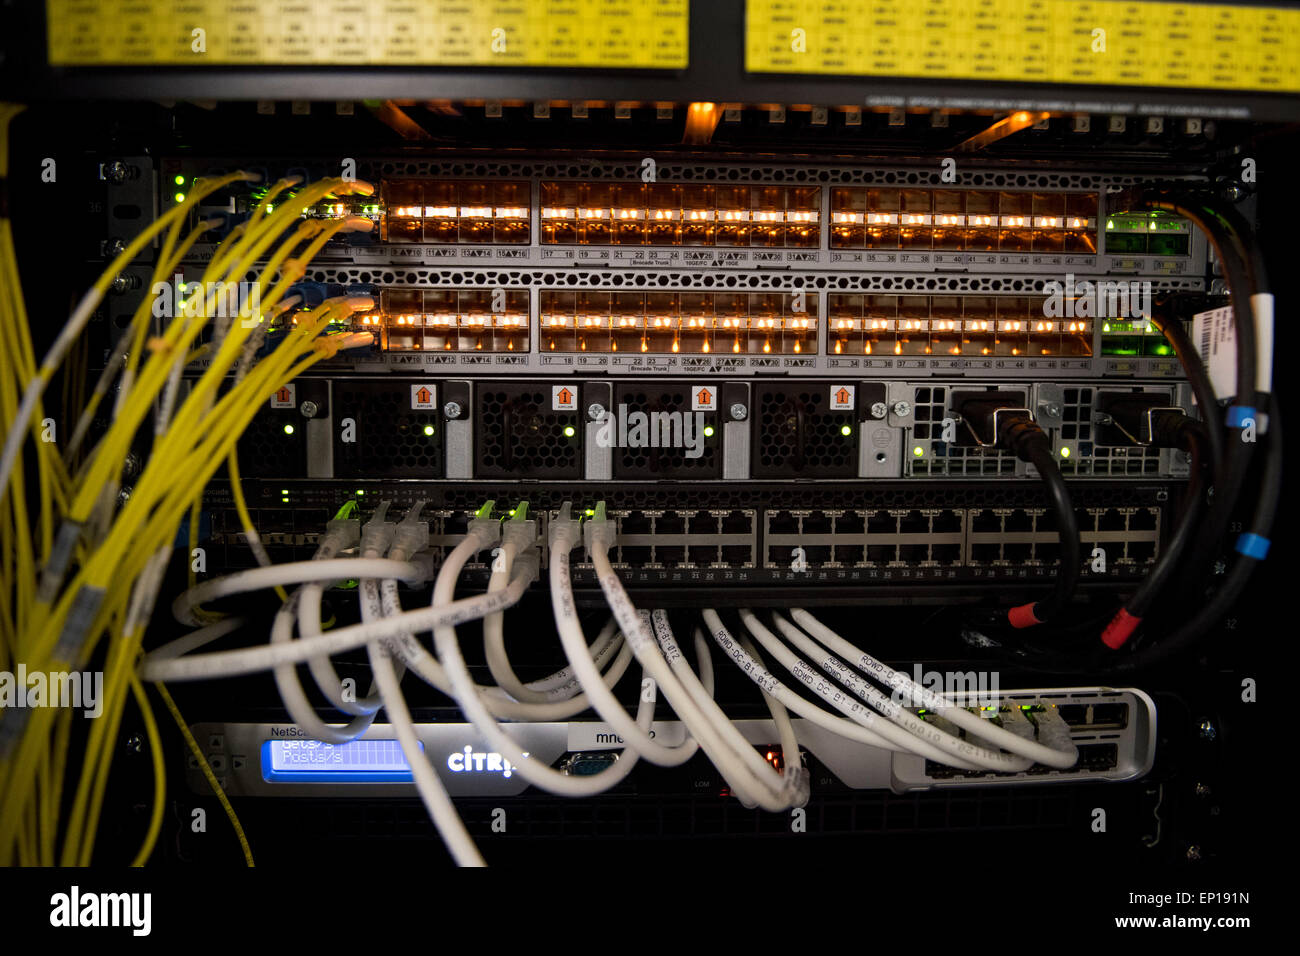 La parte trasera de un ordenador servidor utilizado para cloud computing mostrando los routers y los cables de red. Foto de stock